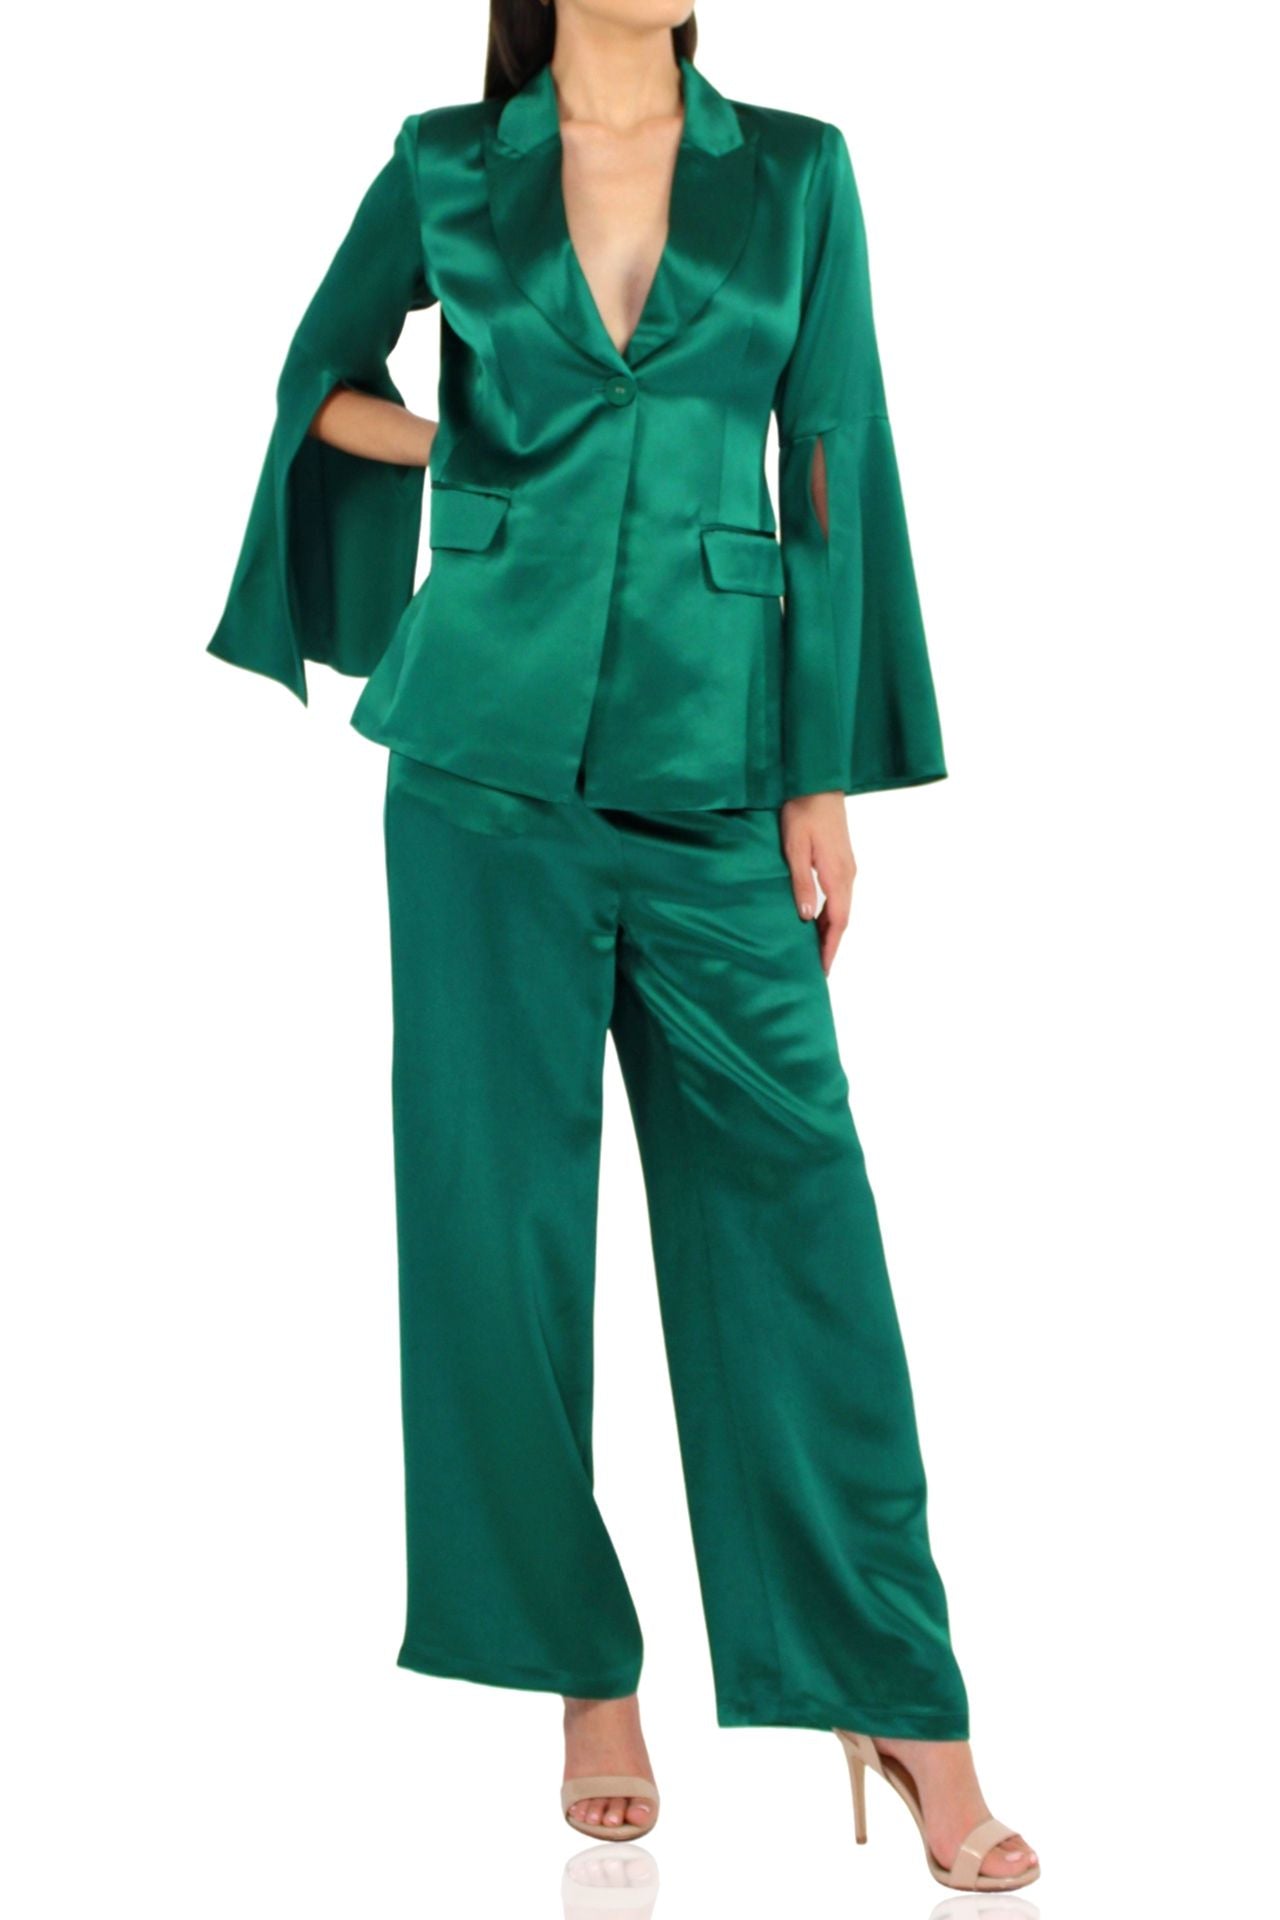 Kyle-Women-Designer-Matching-Green-Suit